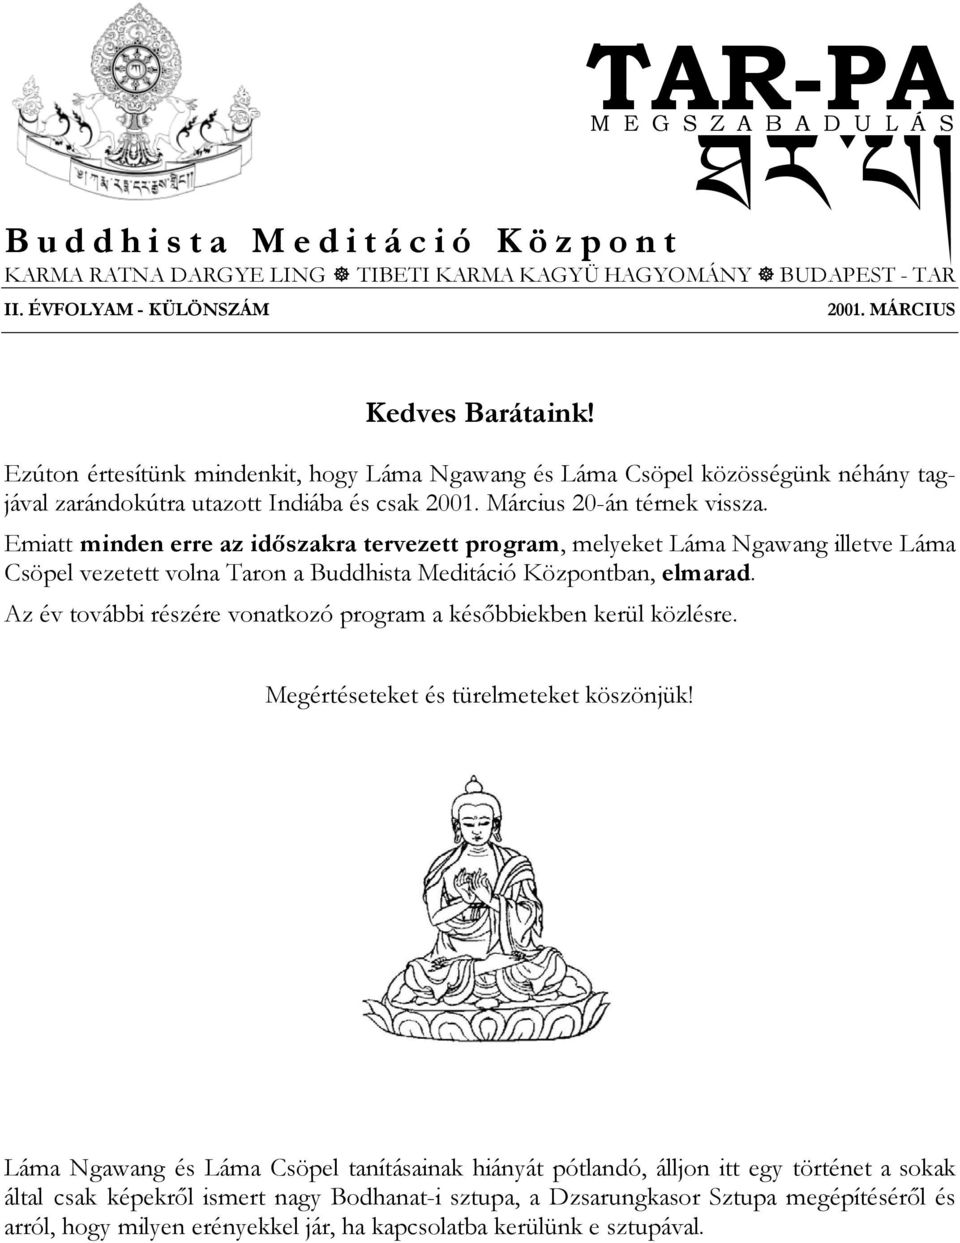 Emiatt minden erre az időszakra tervezett program, melyeket Láma Ngawang illetve Láma Csöpel vezetett volna Taron a Buddhista Meditáció Központban, elmarad.